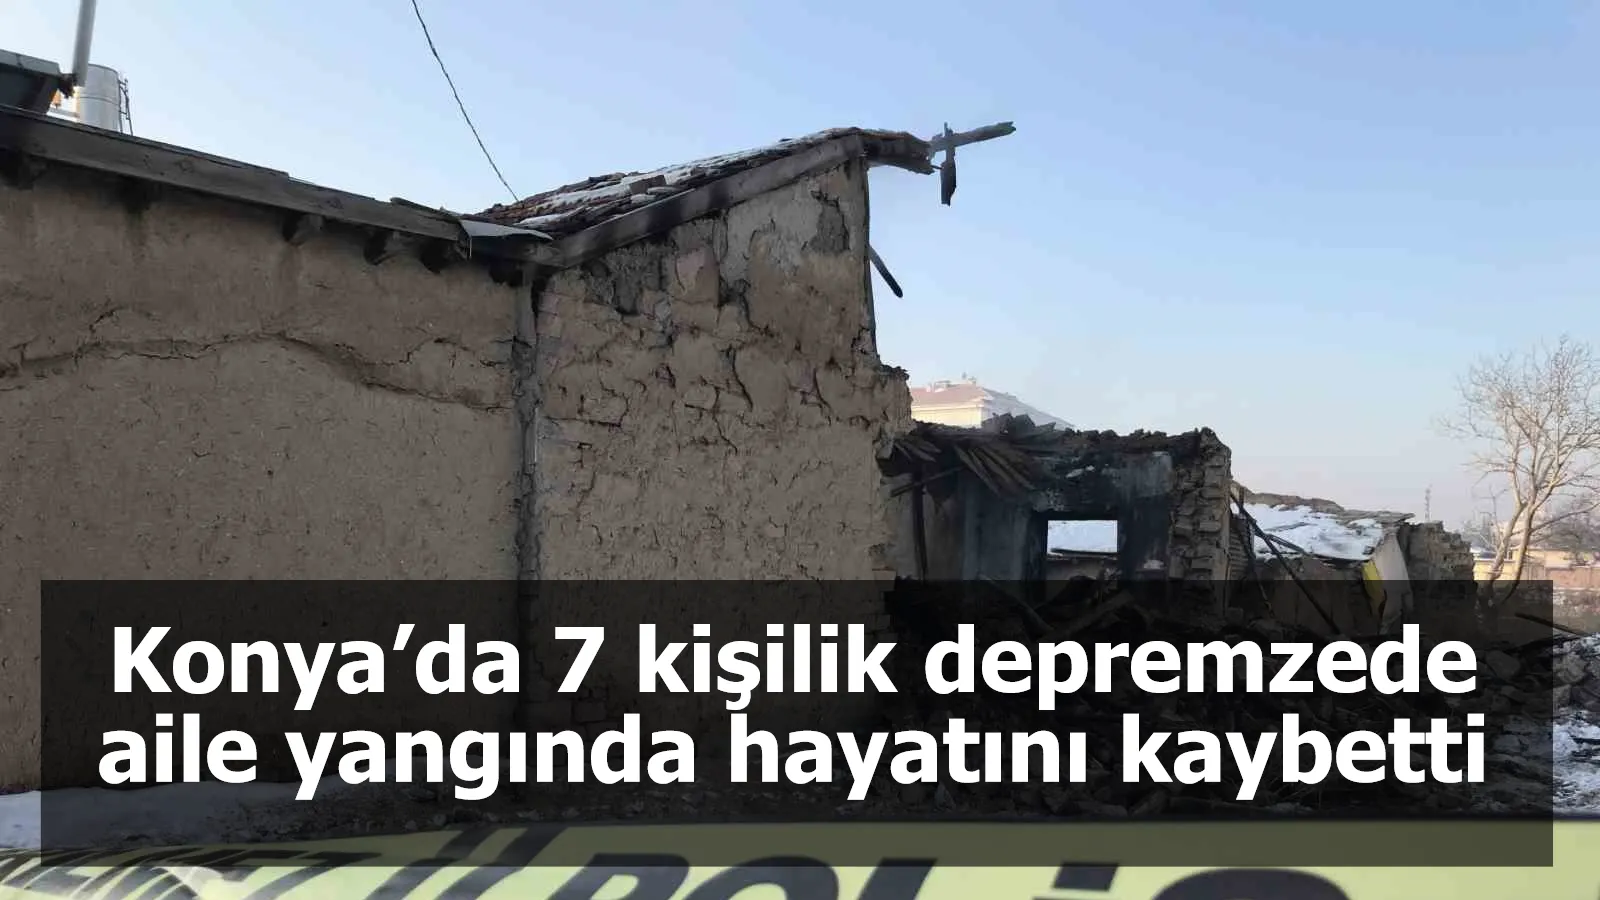 Konya’da 7 kişilik depremzede aile yangında hayatını kaybetti